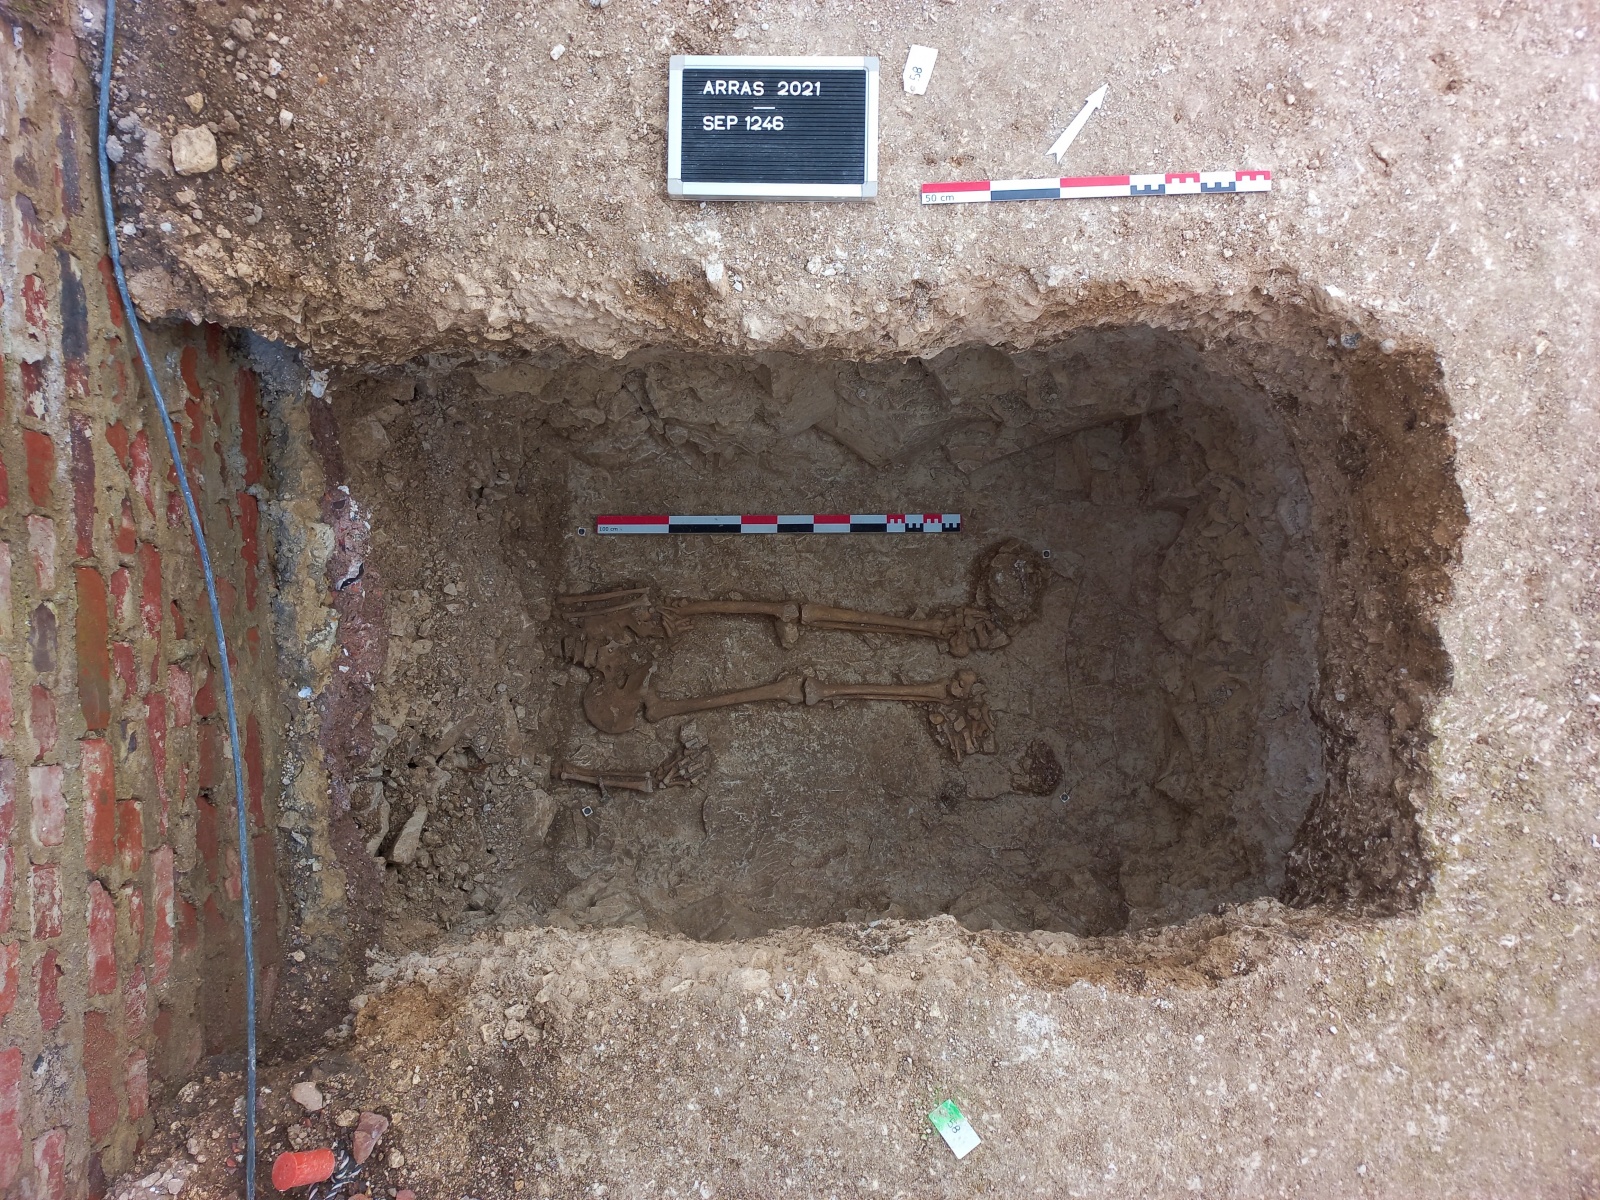 Roman necropolis found under Arras supermarket – The History Blog